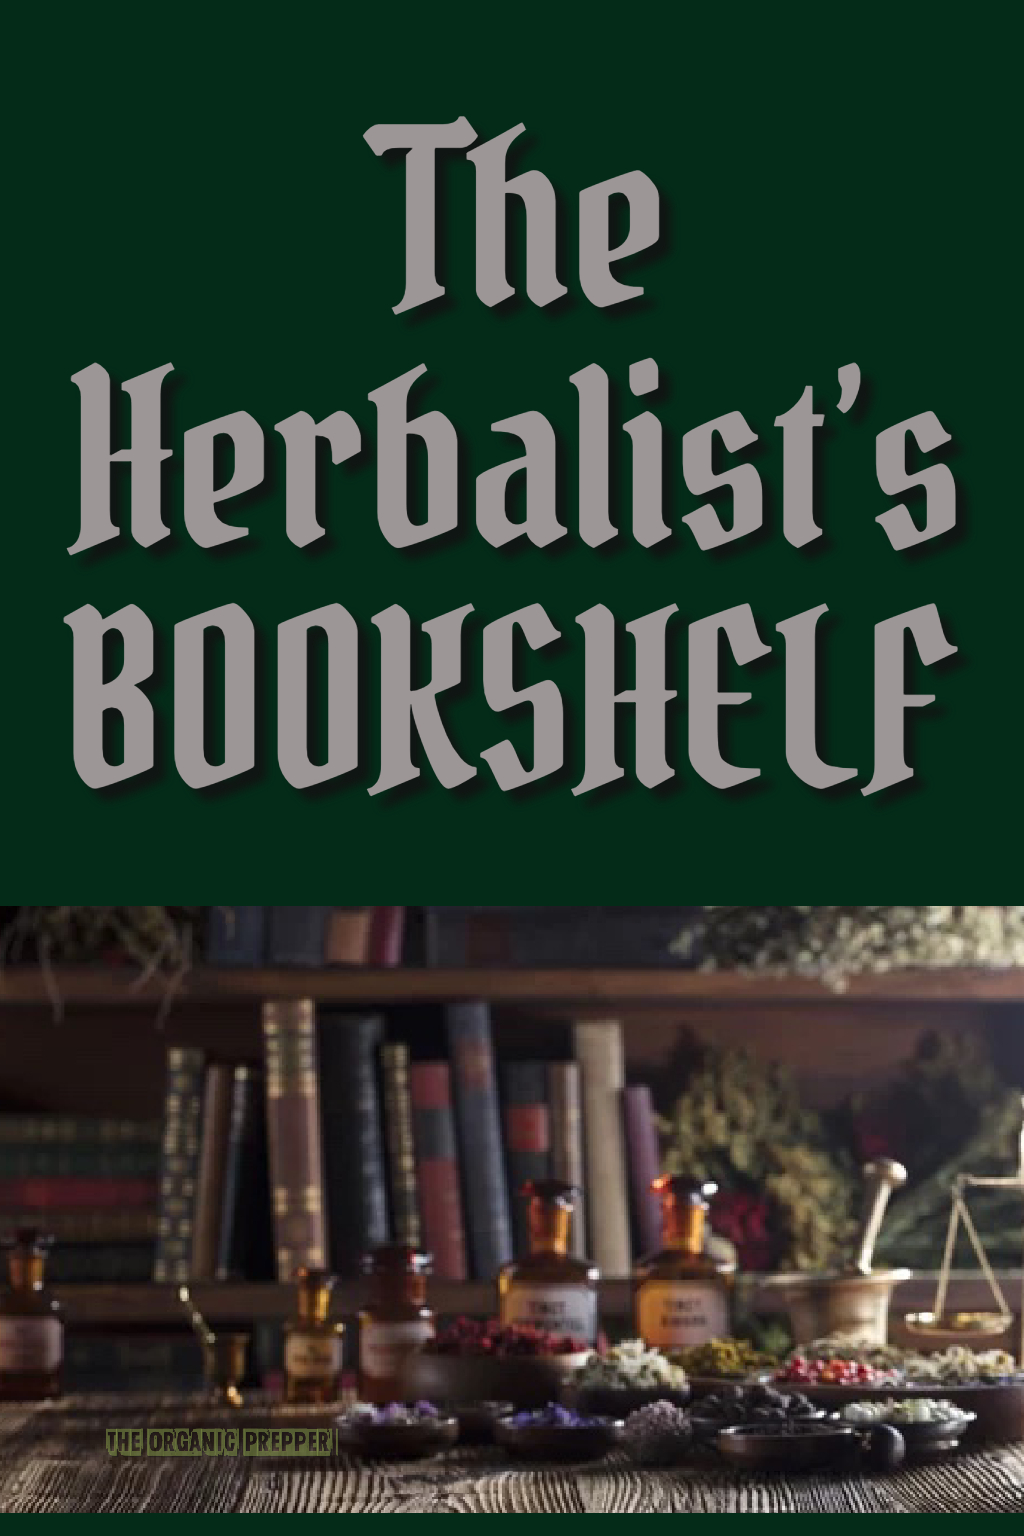 The Herbalist’s Bookshelf